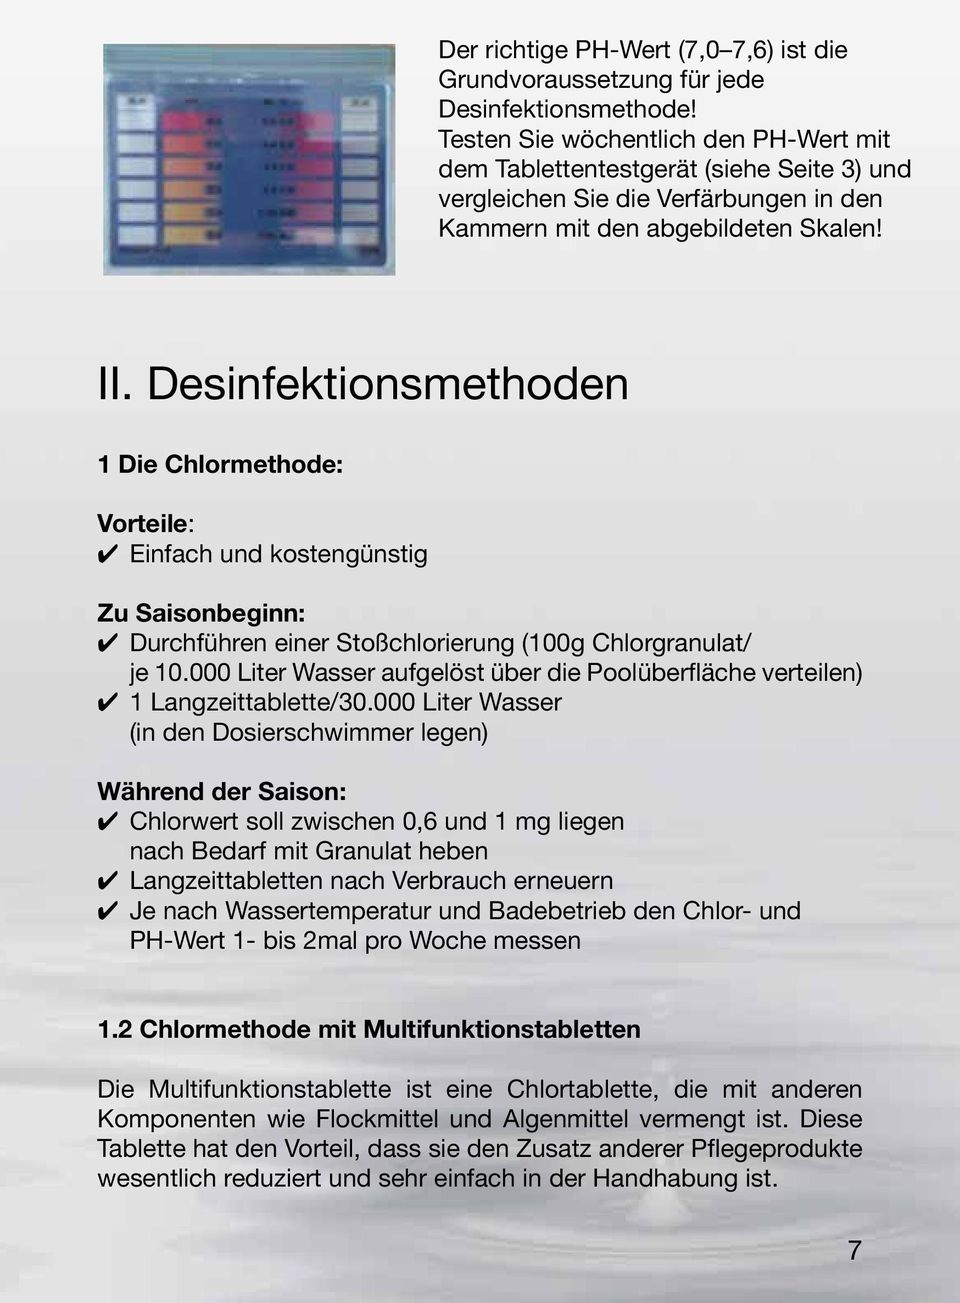 Desinfektionsmethoden 1 Die Chlormethode: Vorteile: Einfach und kostengünstig Zu Saisonbeginn: Durchführen einer Stoßchlorierung (100g Chlorgranulat/ je 10.